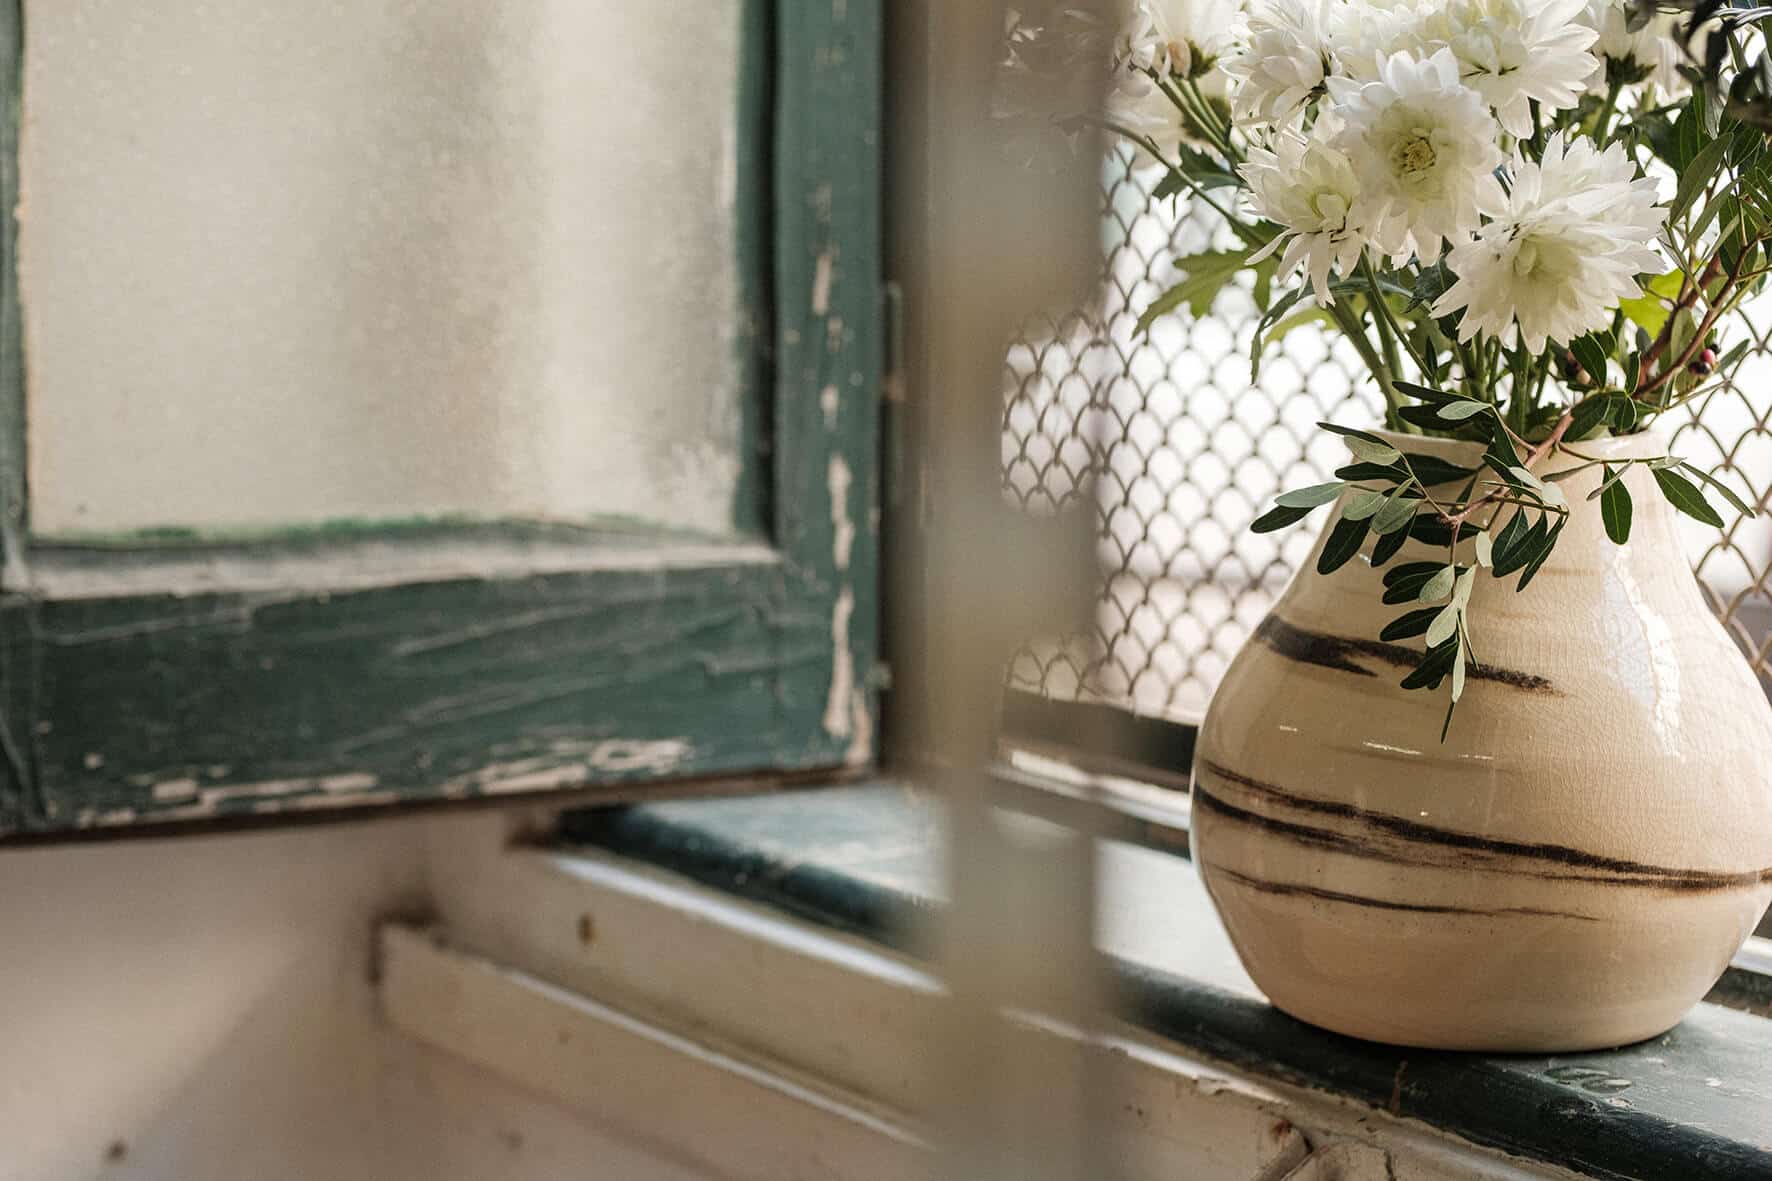 Vaso de cerâmica branco com flores, pousado no parapeito da janela.